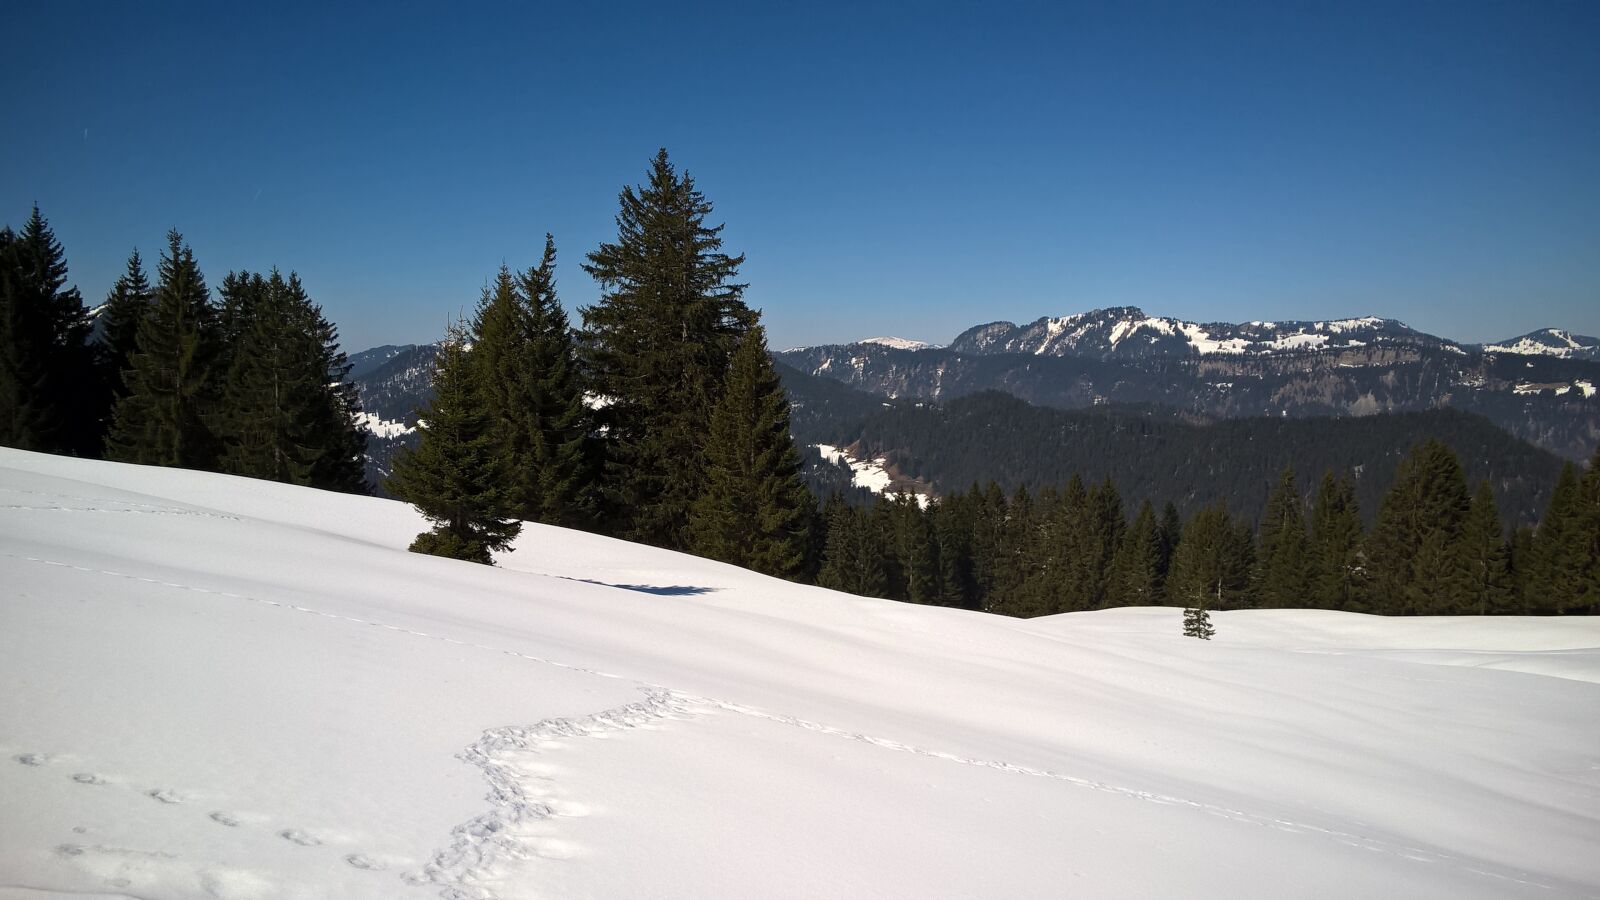 Nokia Lumia 830 sample photo. Snow, mountains, trees photography